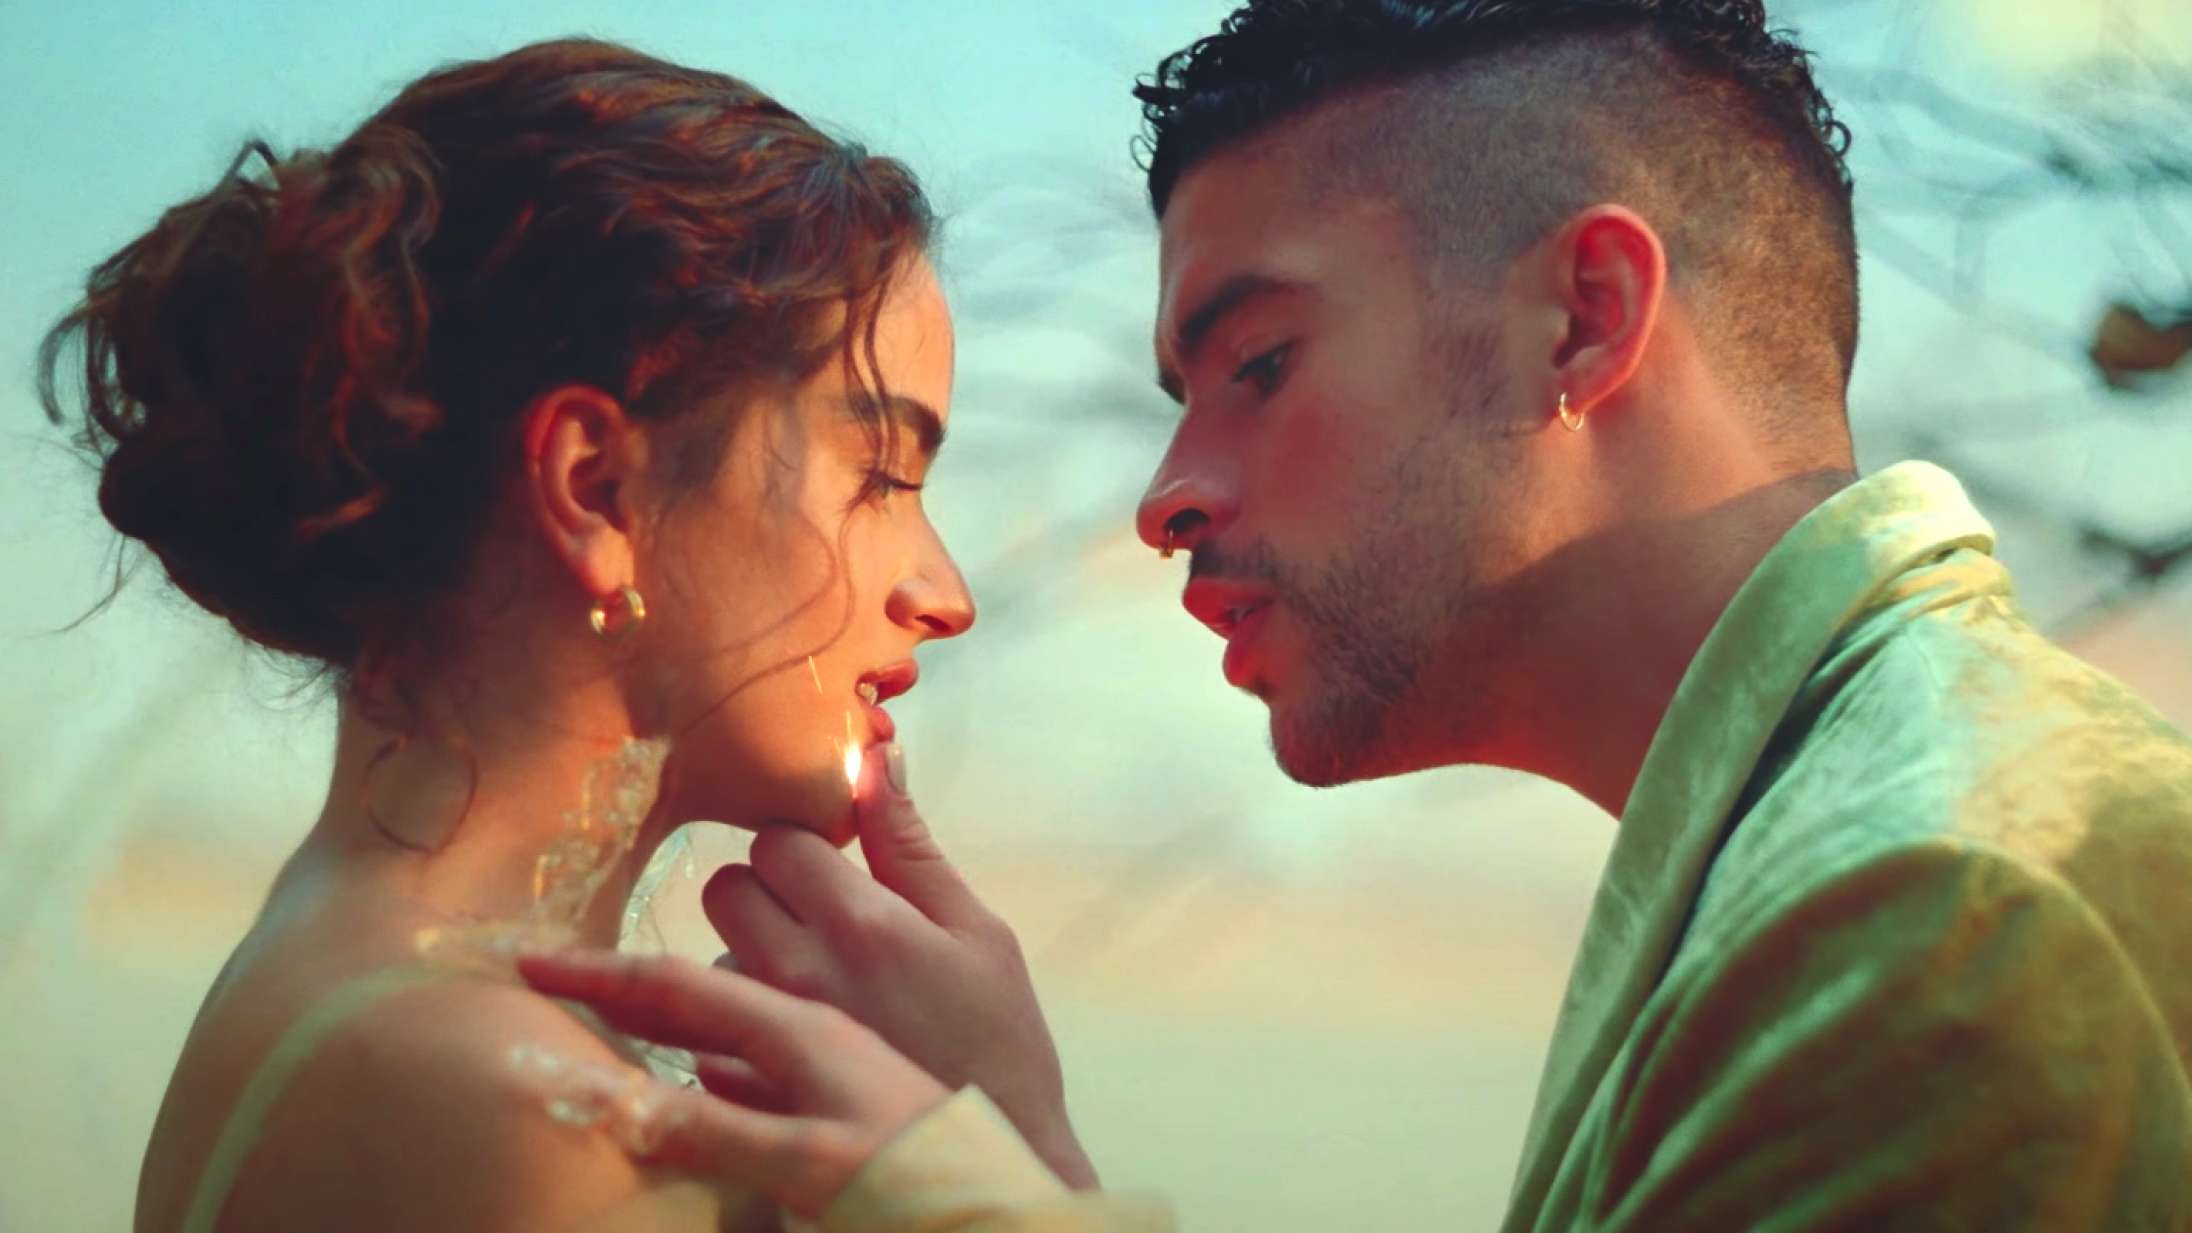 Rosalía og Bad Bunny går op i flammer – se den smukke musikvideo til ‘La Noche de Anoche’